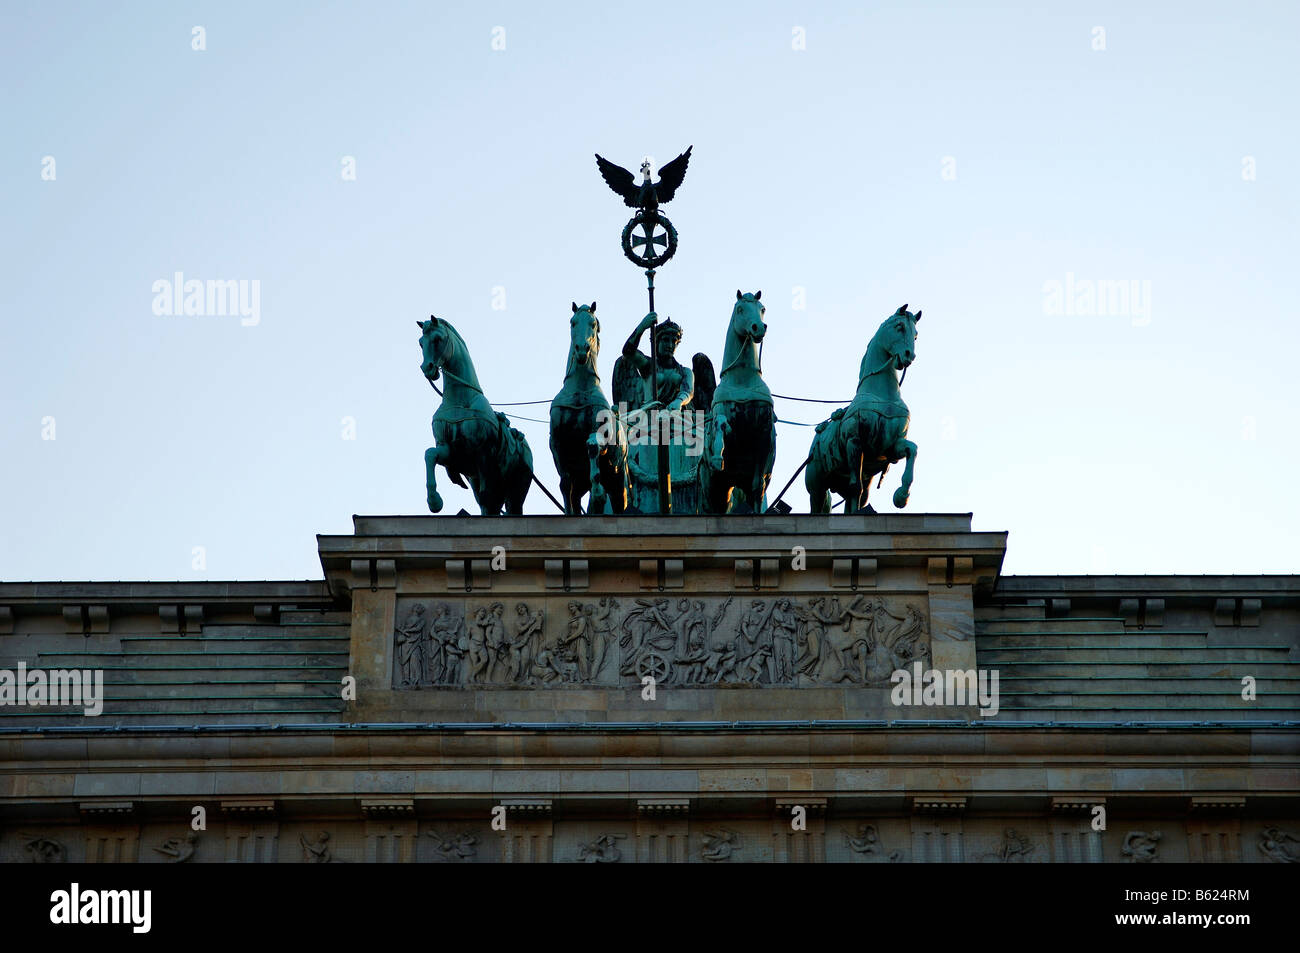 Le quadrige de la porte de Brandebourg, Berlin, Germany, Europe Banque D'Images